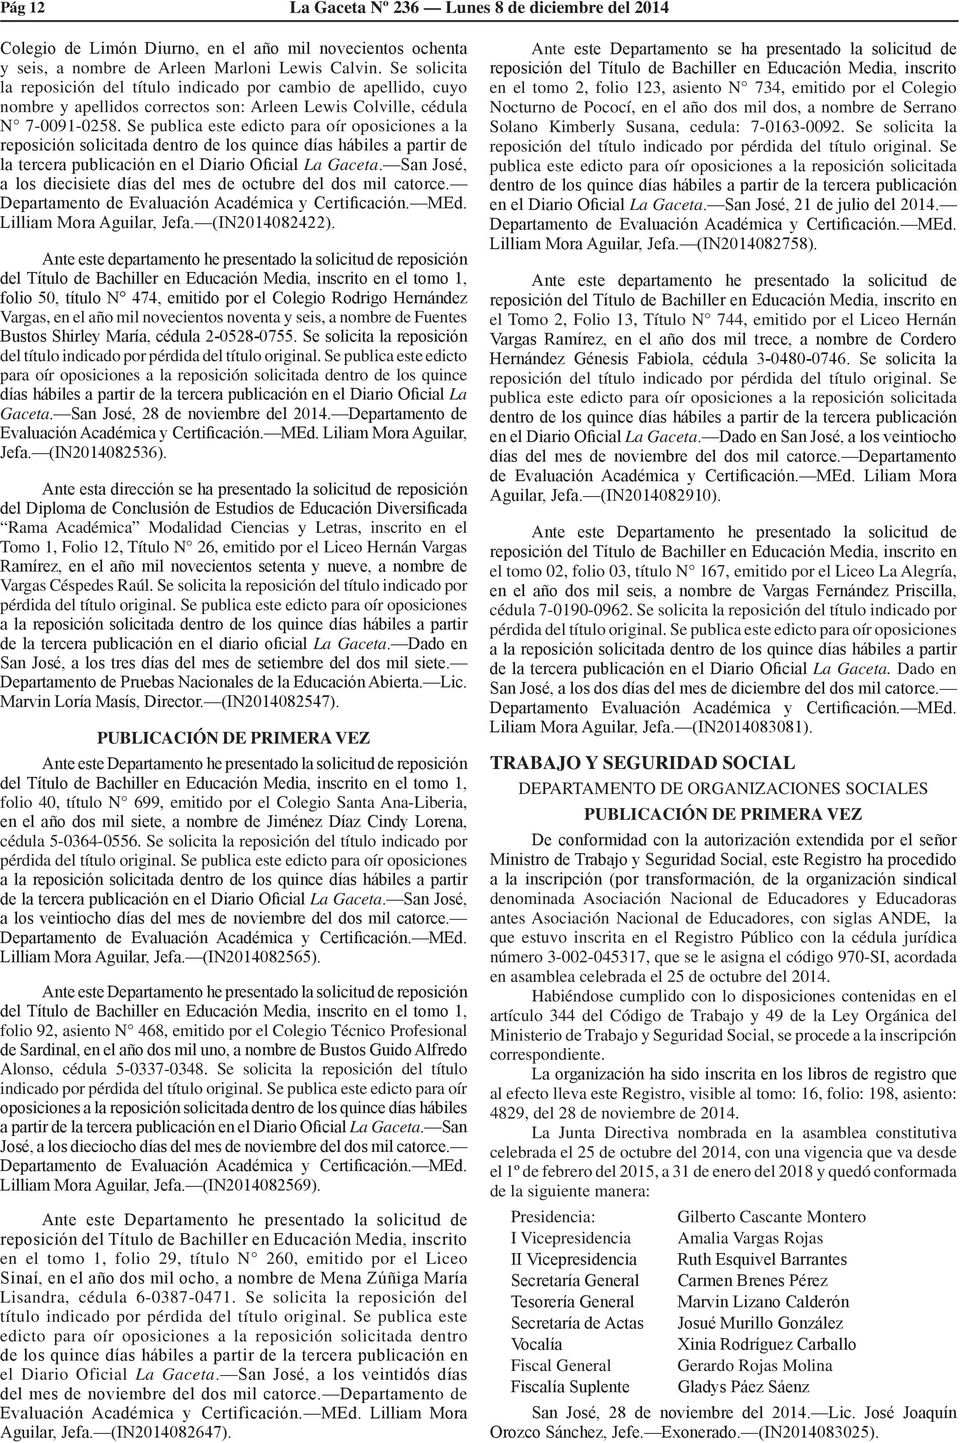 Se publica este edicto para oír oposiciones a la reposición solicitada dentro de los quince días hábiles a partir de la tercera publicación en el Diario Oficial La Gaceta.